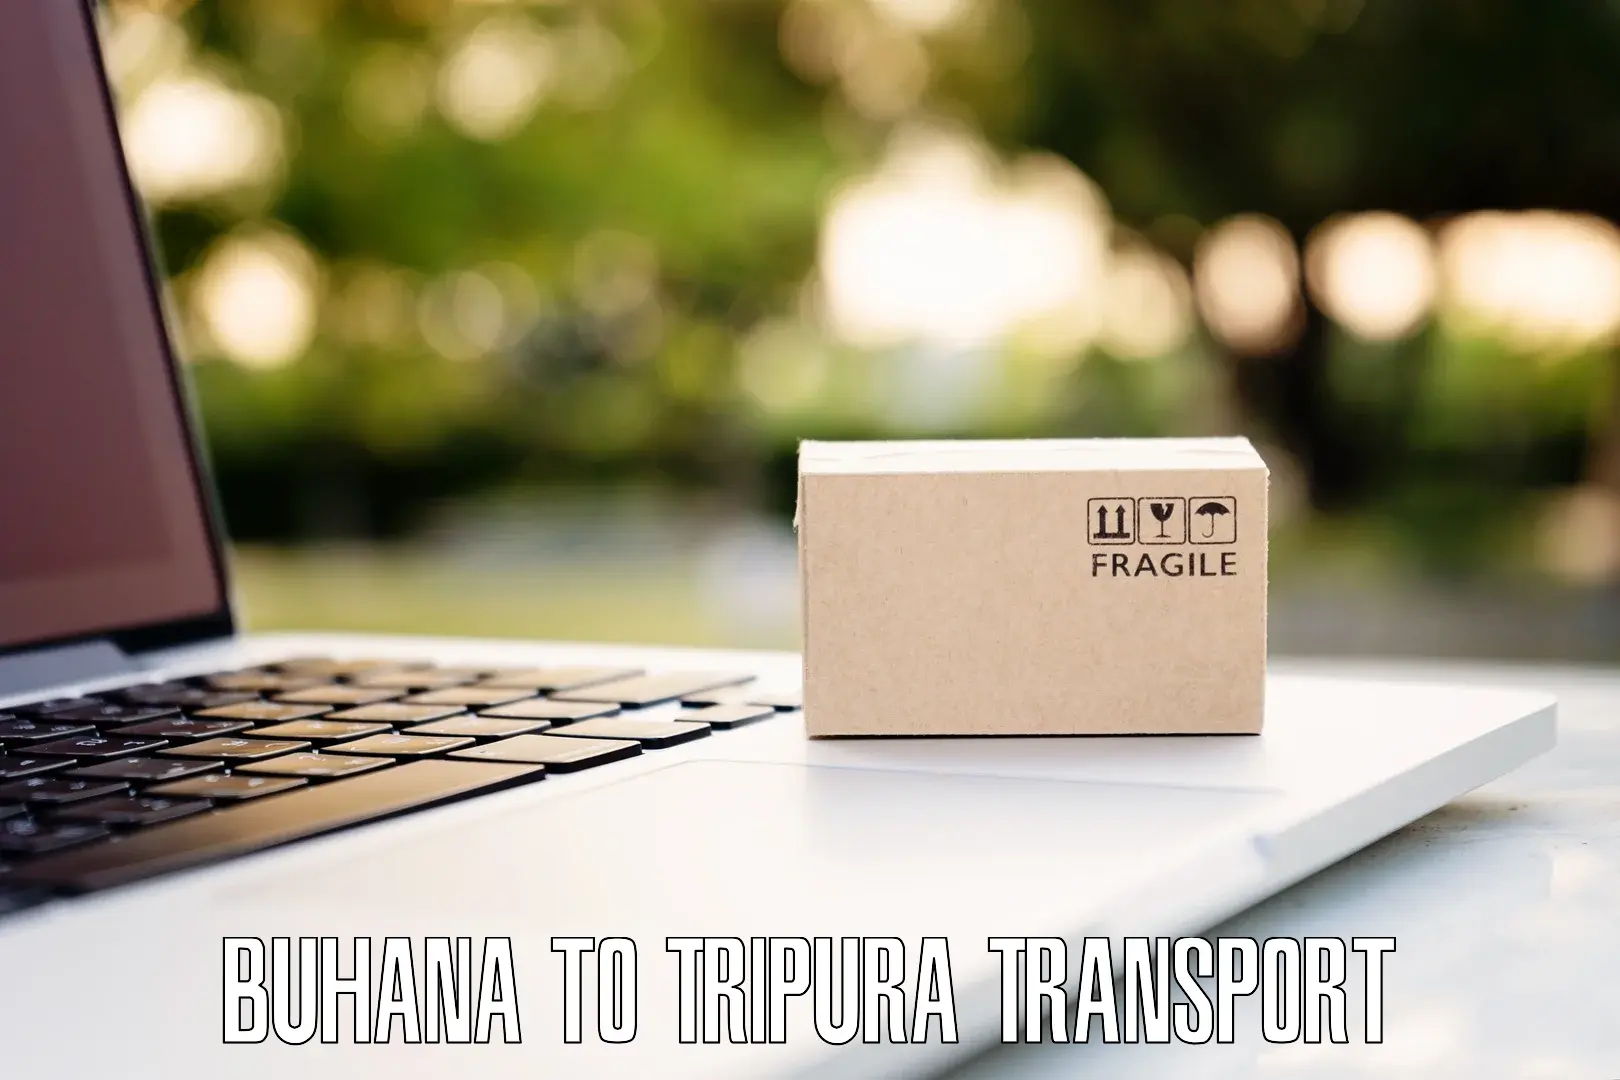 Delivery service Buhana to Sonamura